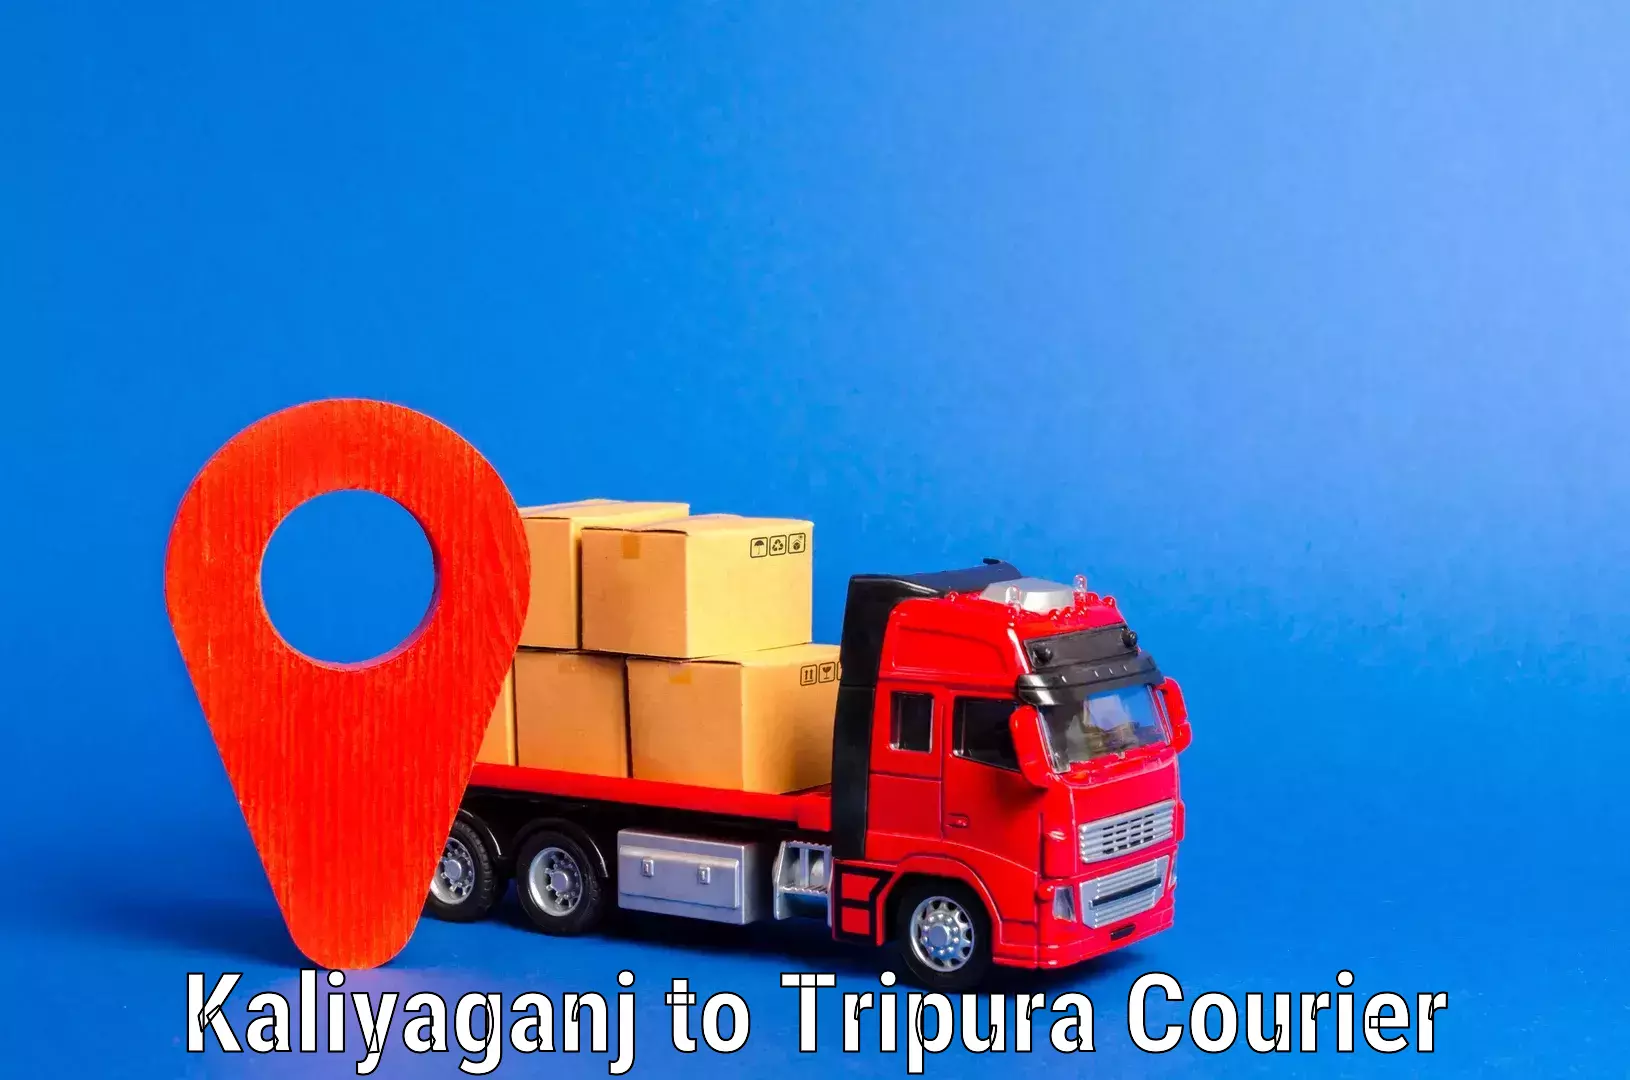 Furniture moving experts Kaliyaganj to Tripura